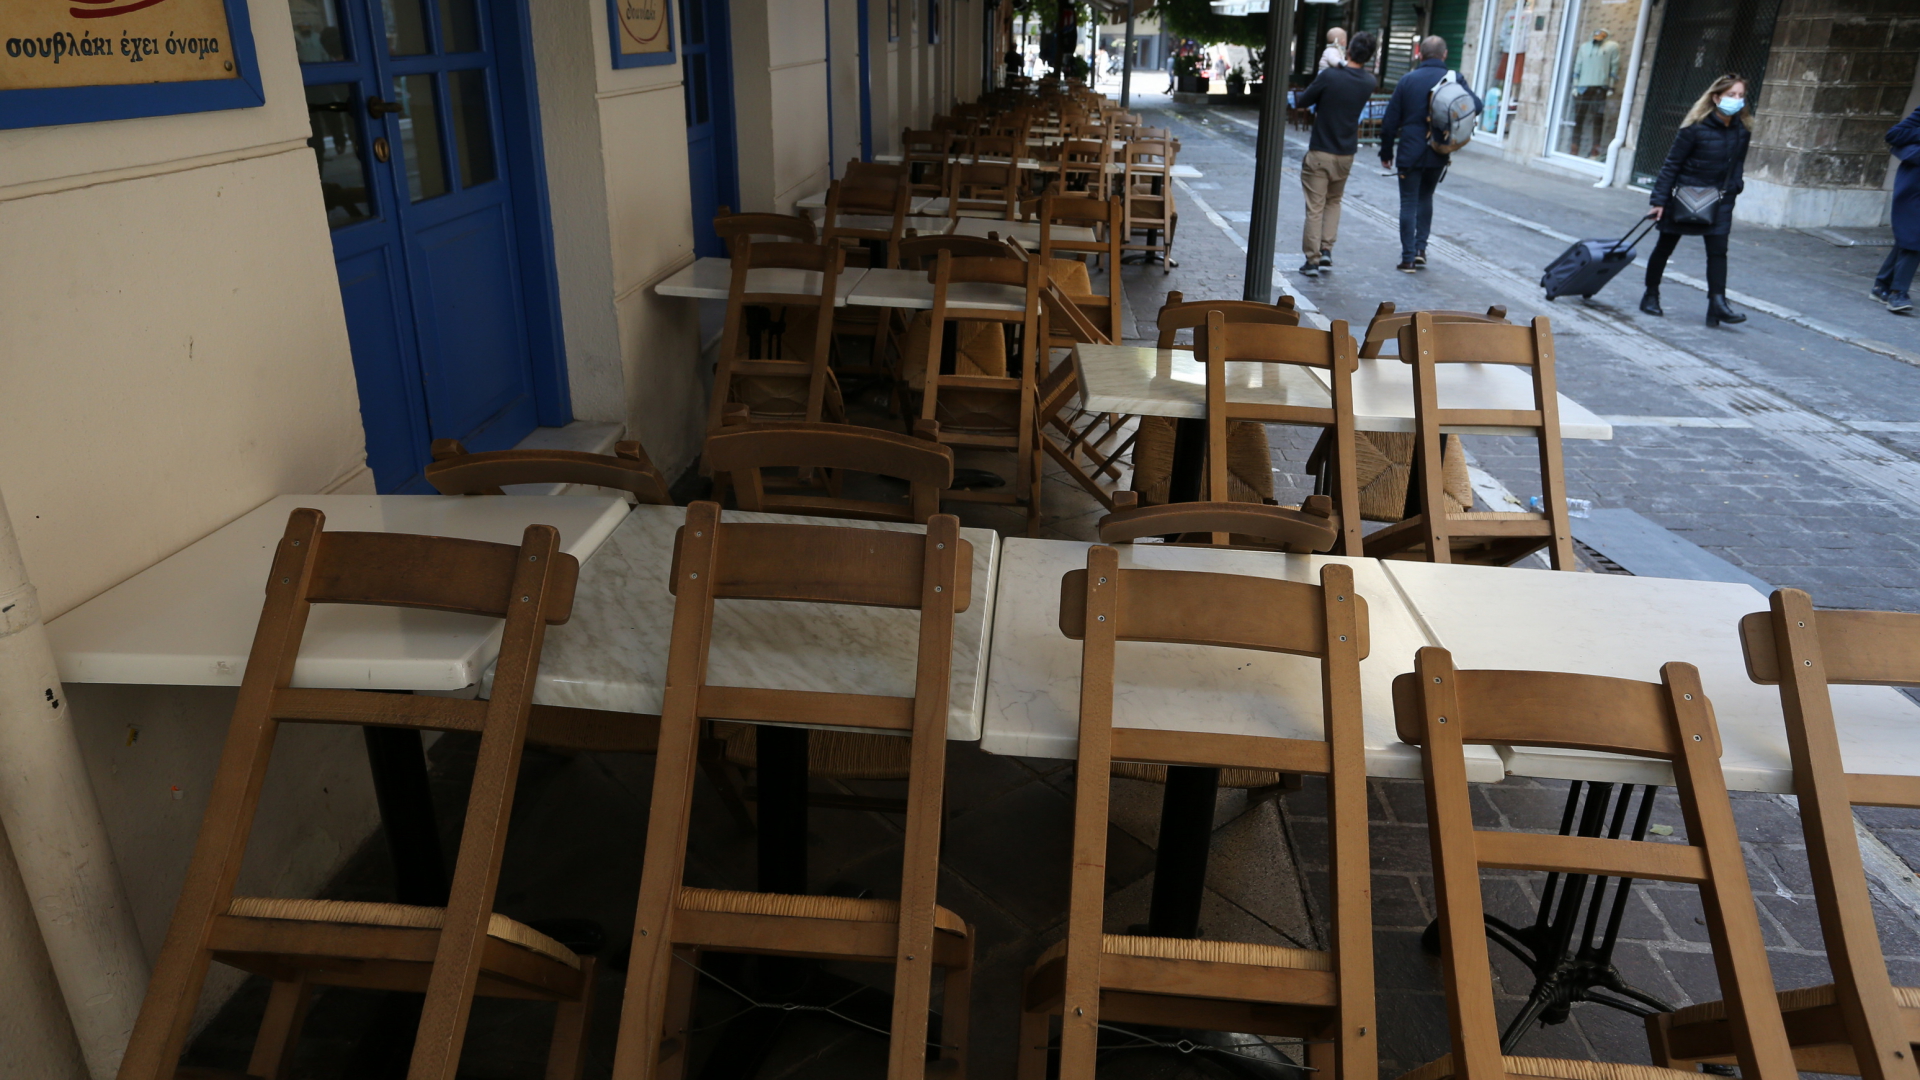 Streiks in Restaurants in Griechenland | dpa